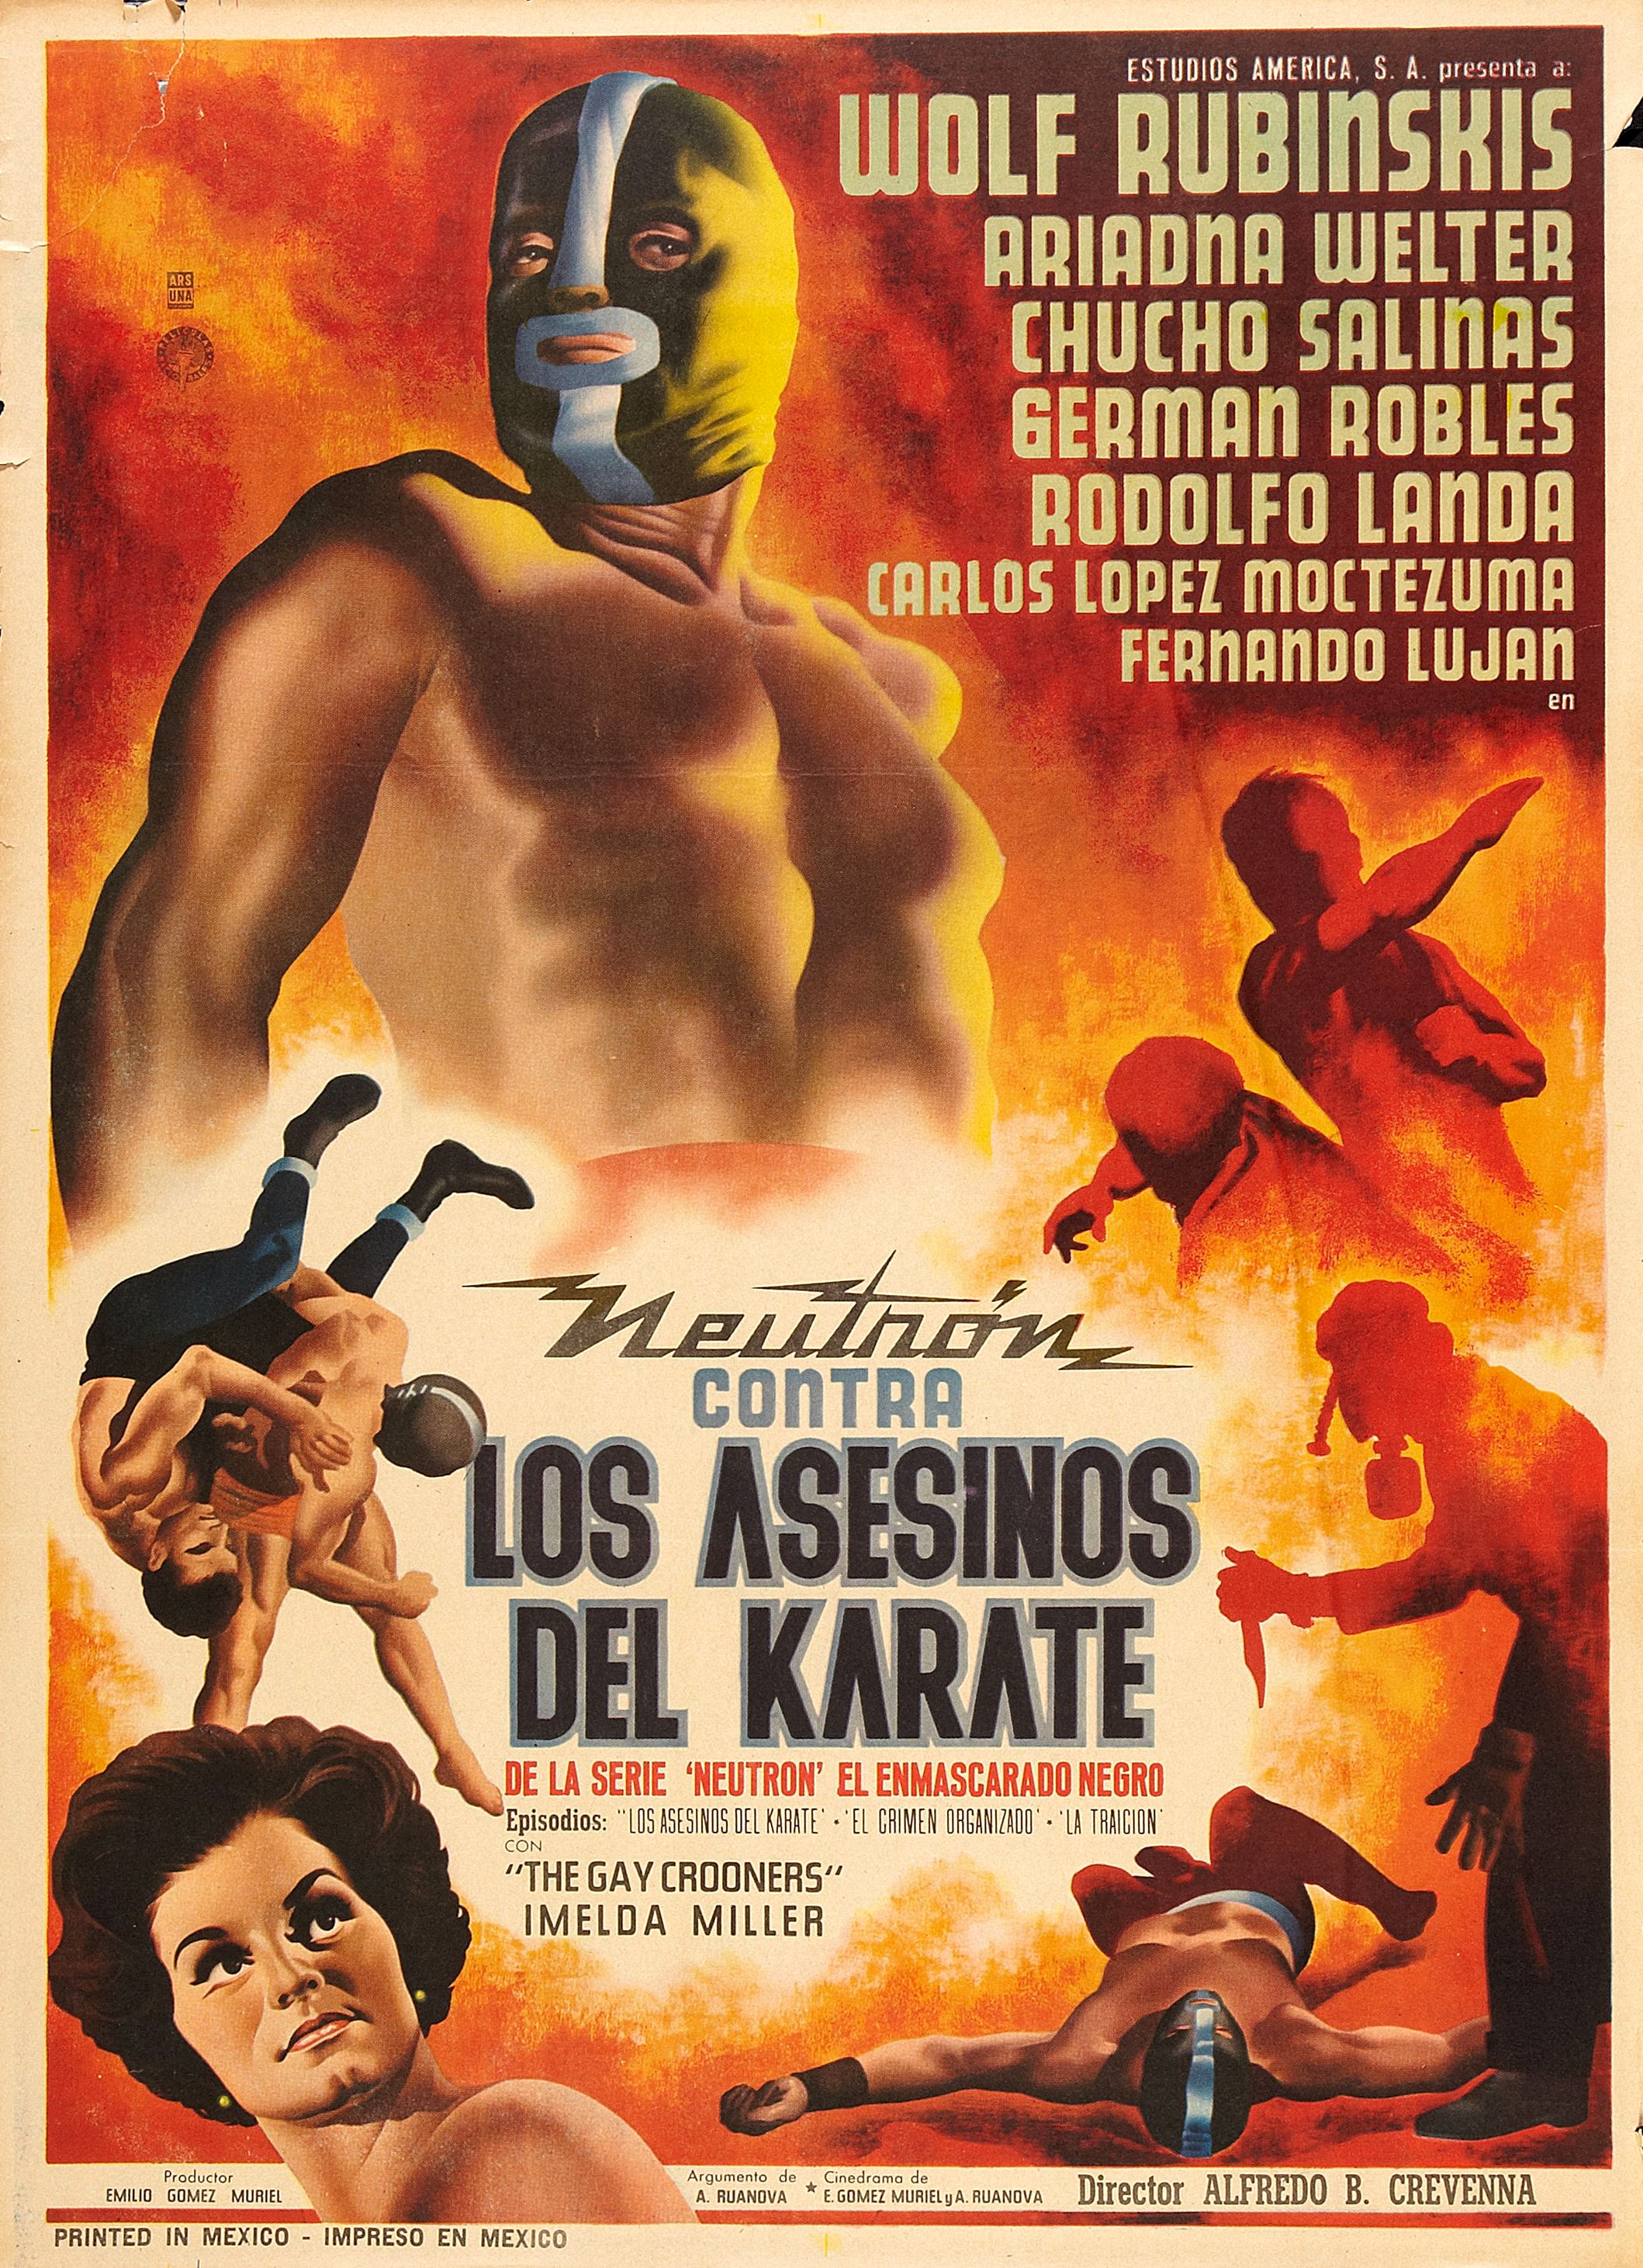 Neutron Battles the Karate Assassins (1965) Screenshot 2 